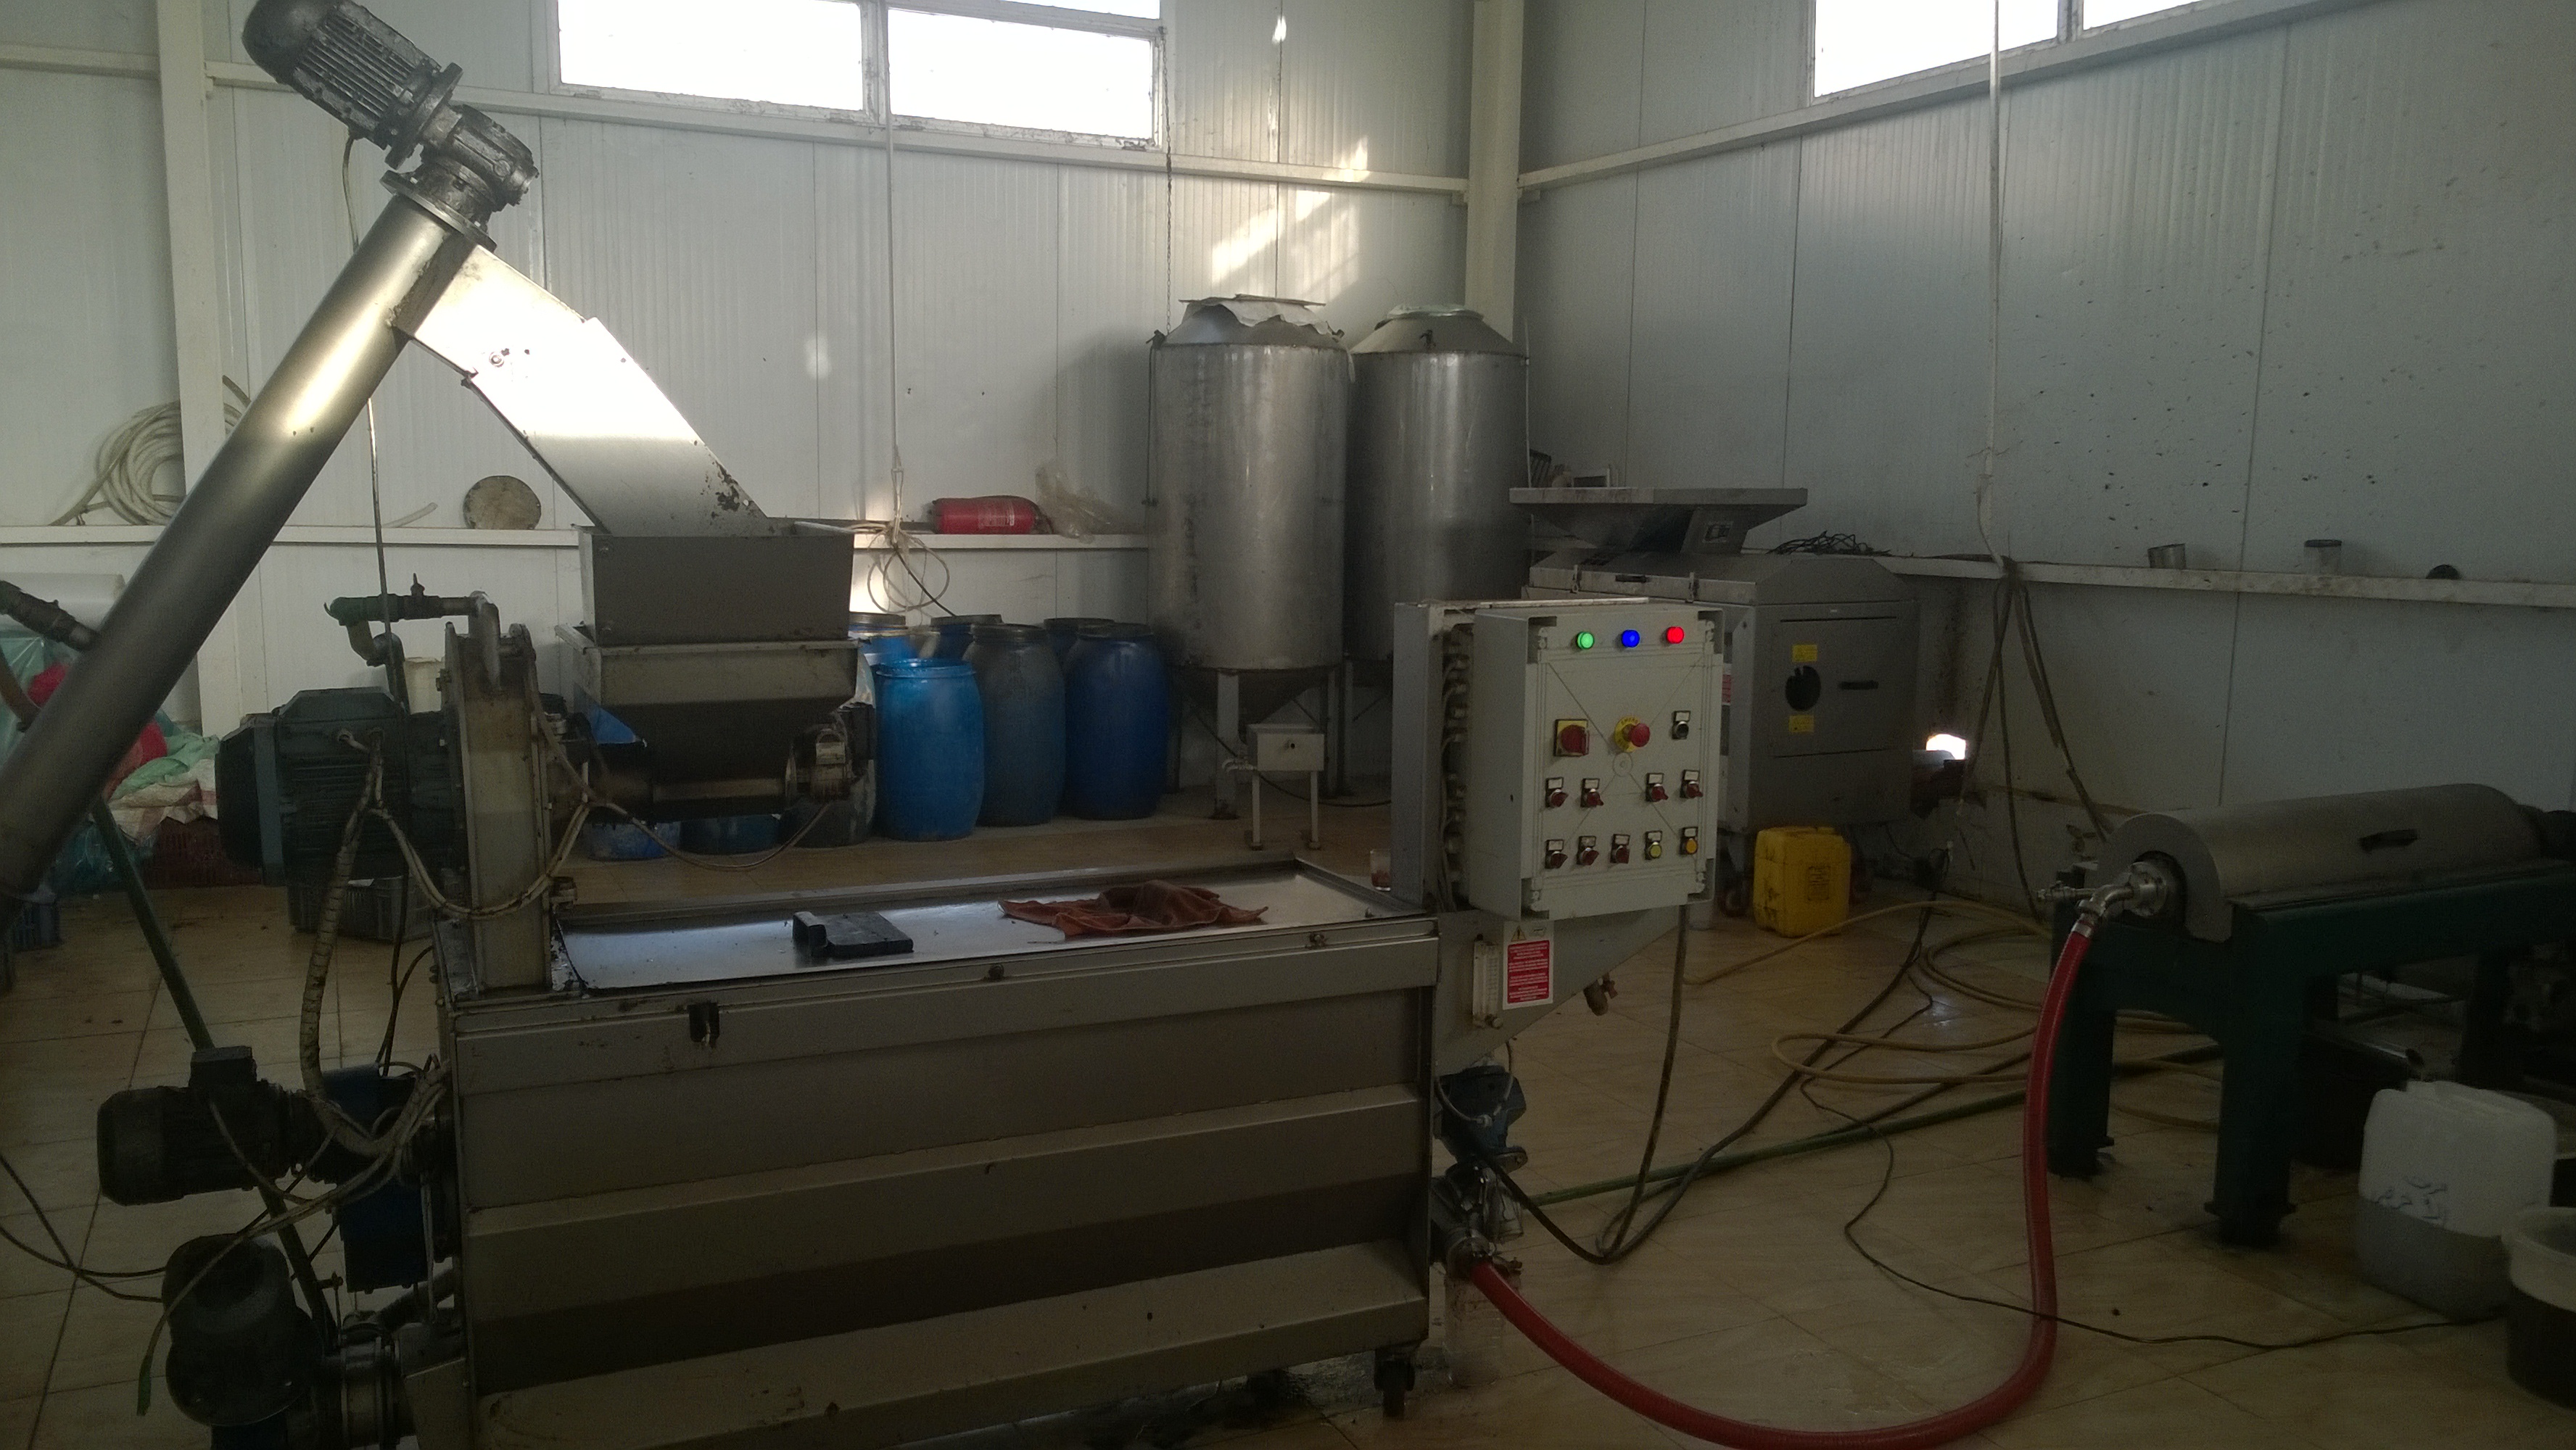 اليوم السابع داخل أول مصنع لتصنيع الزيتون بالمنطقة الحدودية الغربية (1)